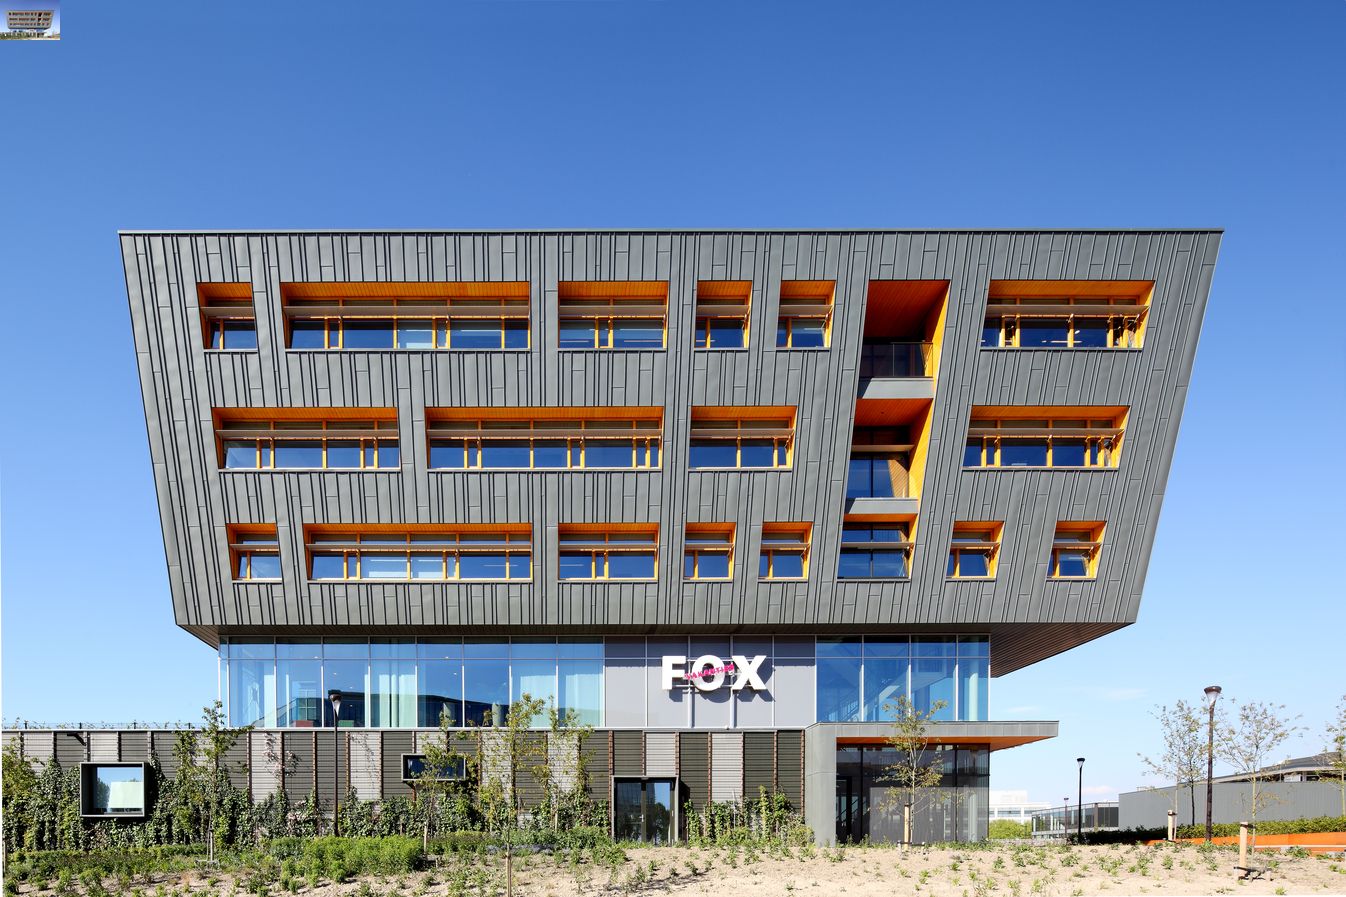 FOX Vakanties, Netherlands, C2C certified, Façade: RHEINZINK-prePATINA graphite-grey, angled standing seam technique